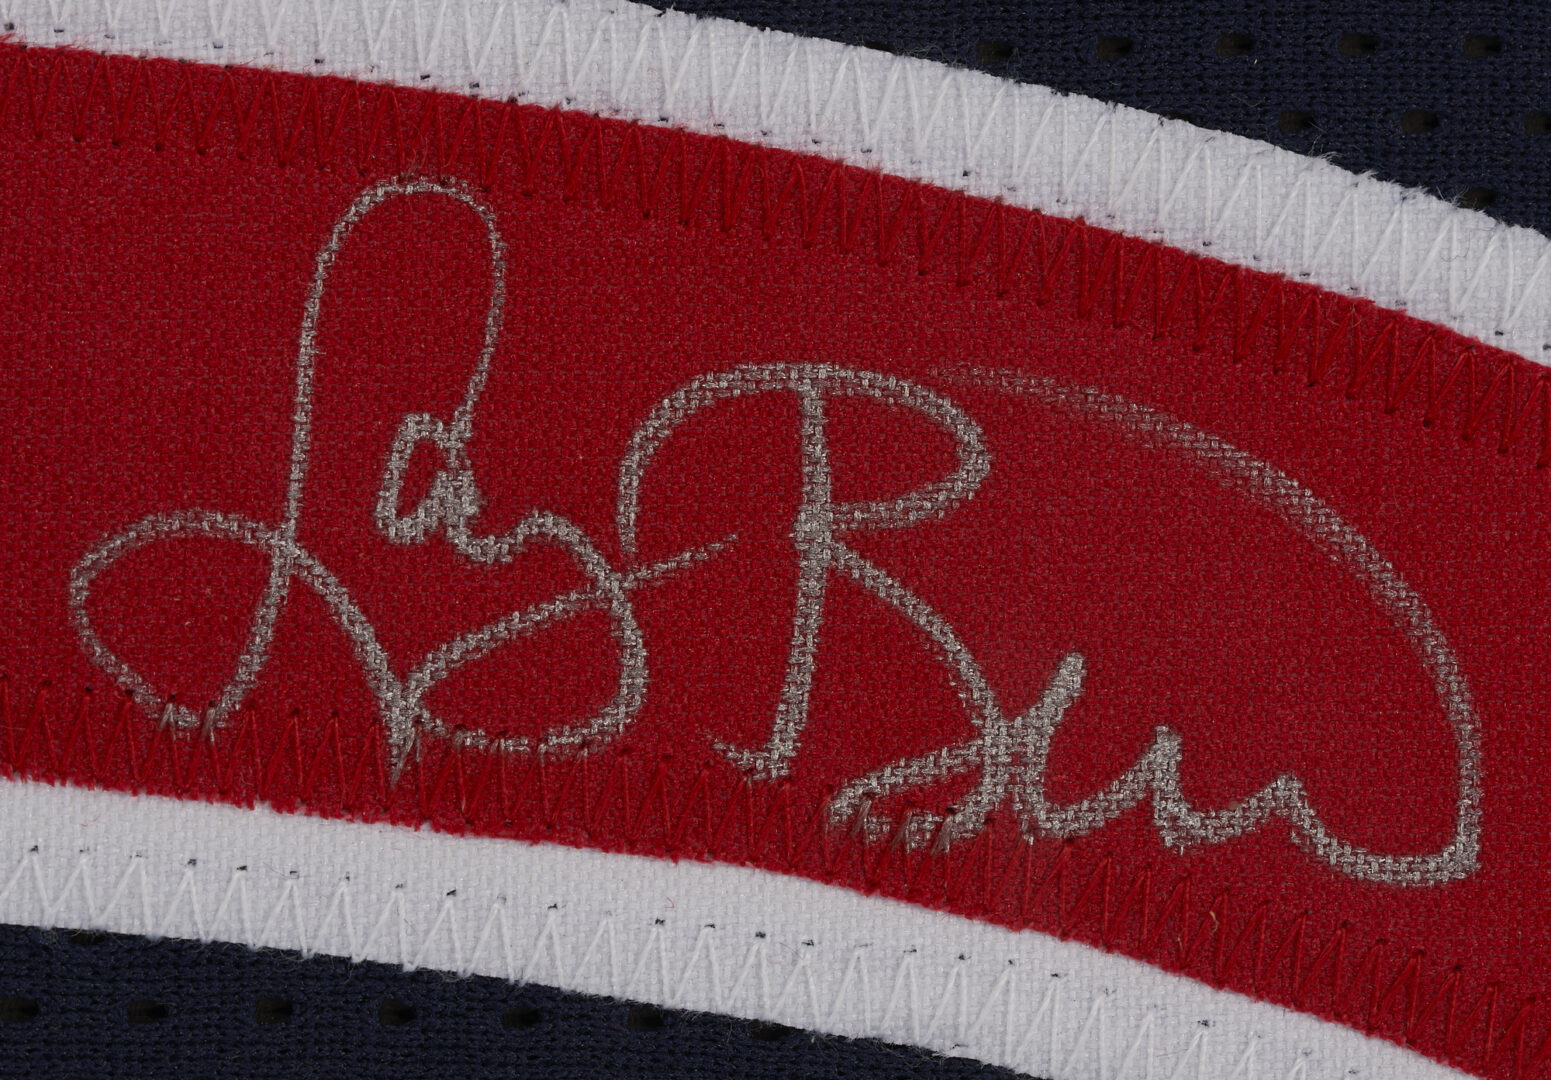 Lot 185: Framed Larry Bird Signed Jersey, JSA Authentication